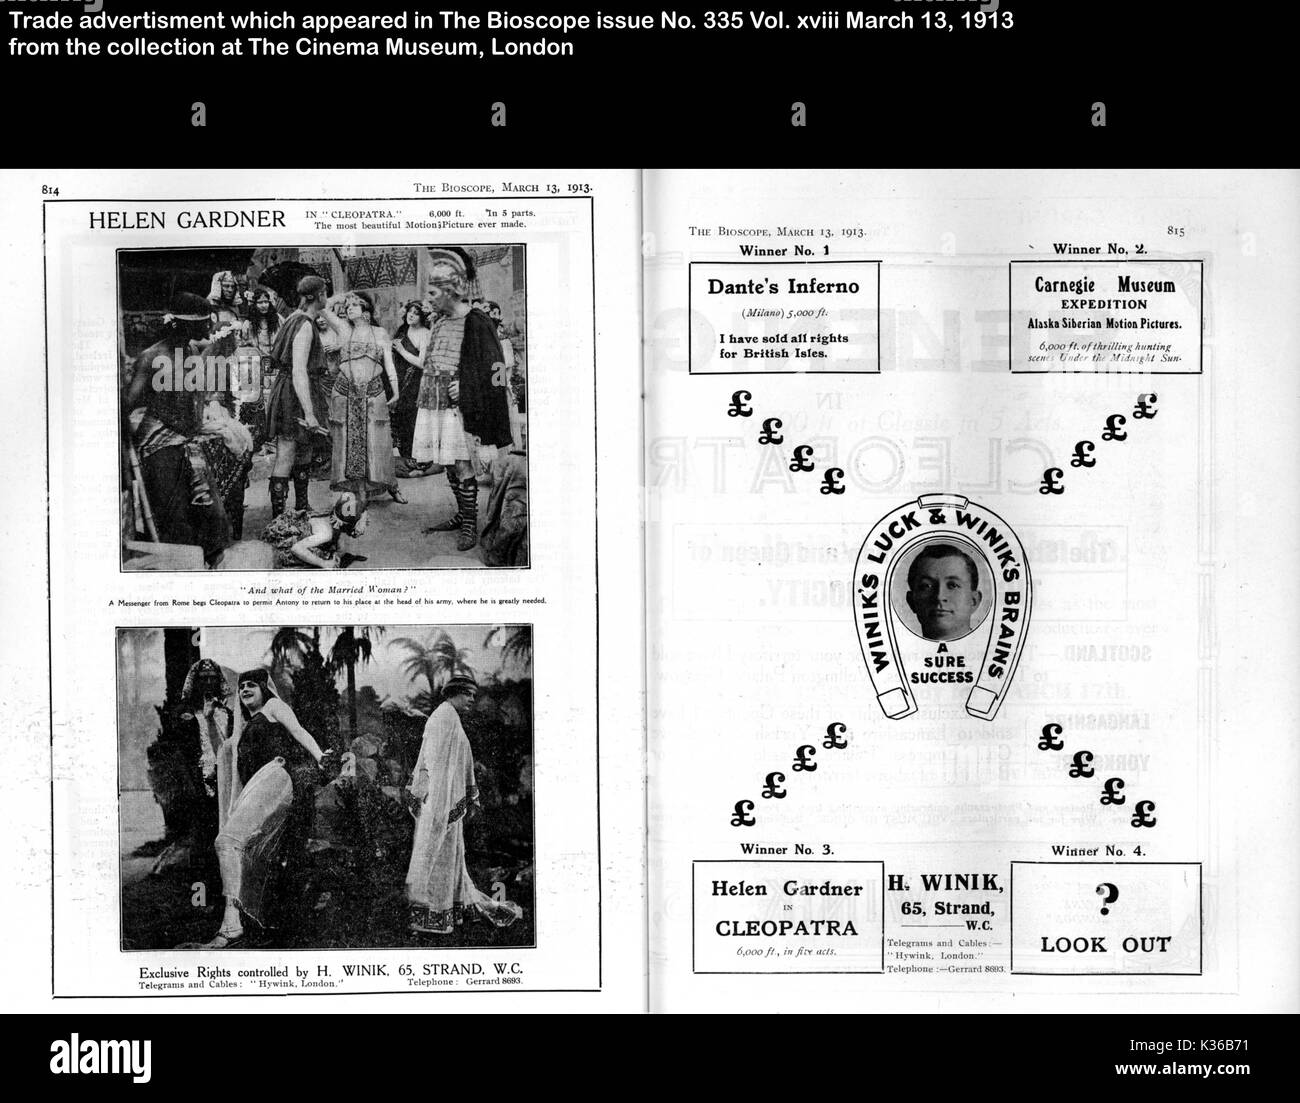 Handel WERBUNG QUELLE DAS BIOSCOPE AUSGABE Nr. 335 Vol. XVIII 13 MÄRZ 1913 SAMMLUNG DAS KINO MUSEUM LONDON Stockfoto